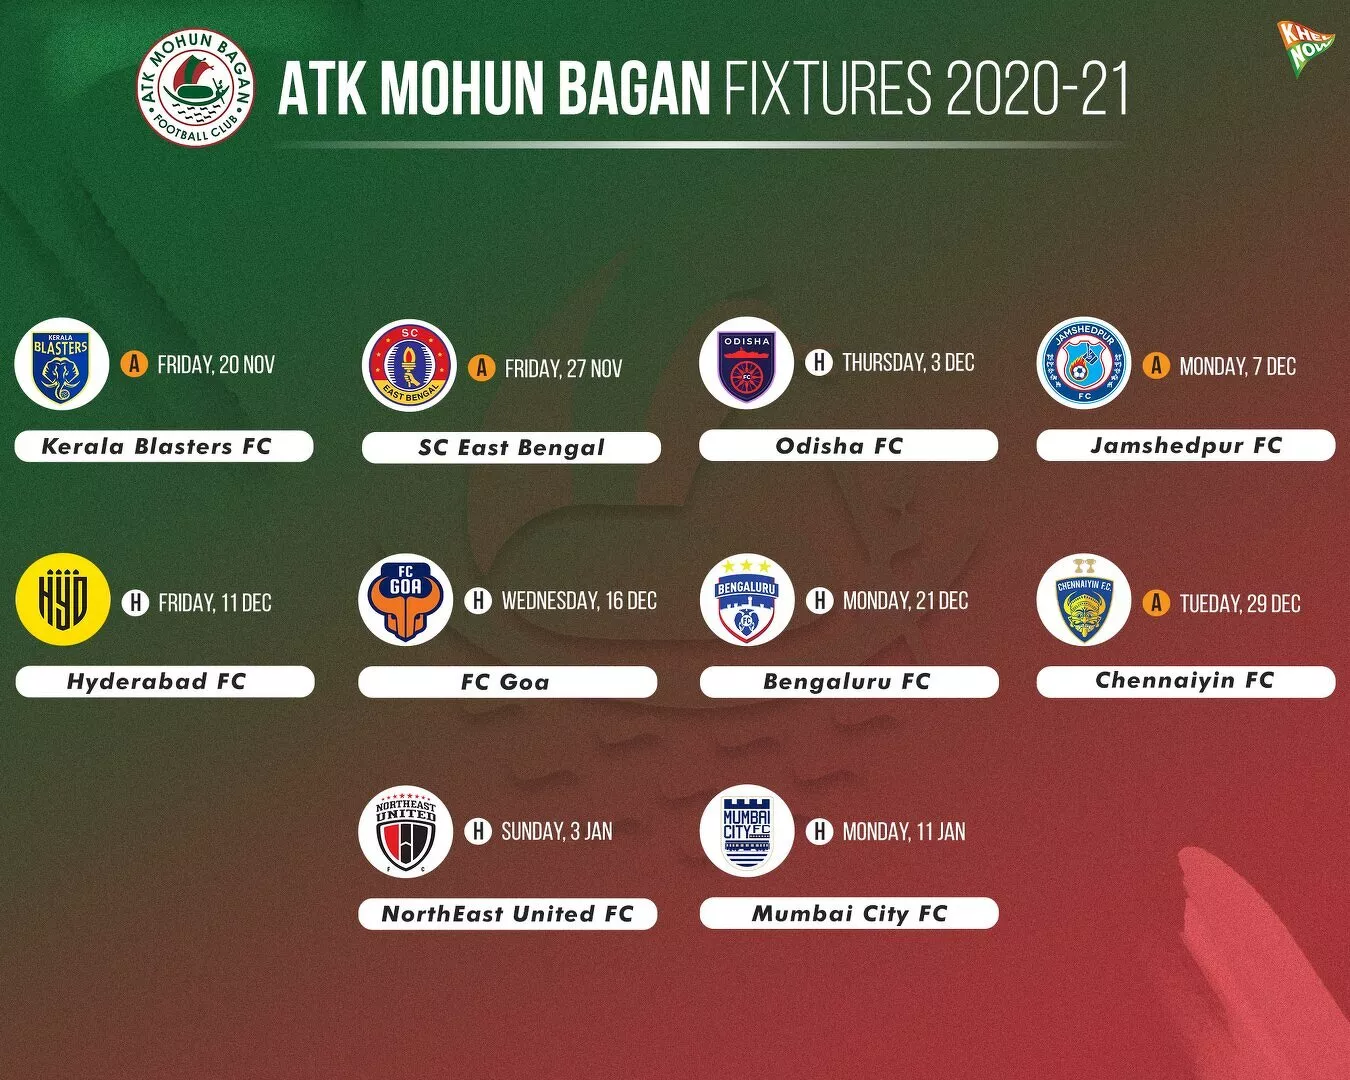 ATK Mohun Bagan fixtures